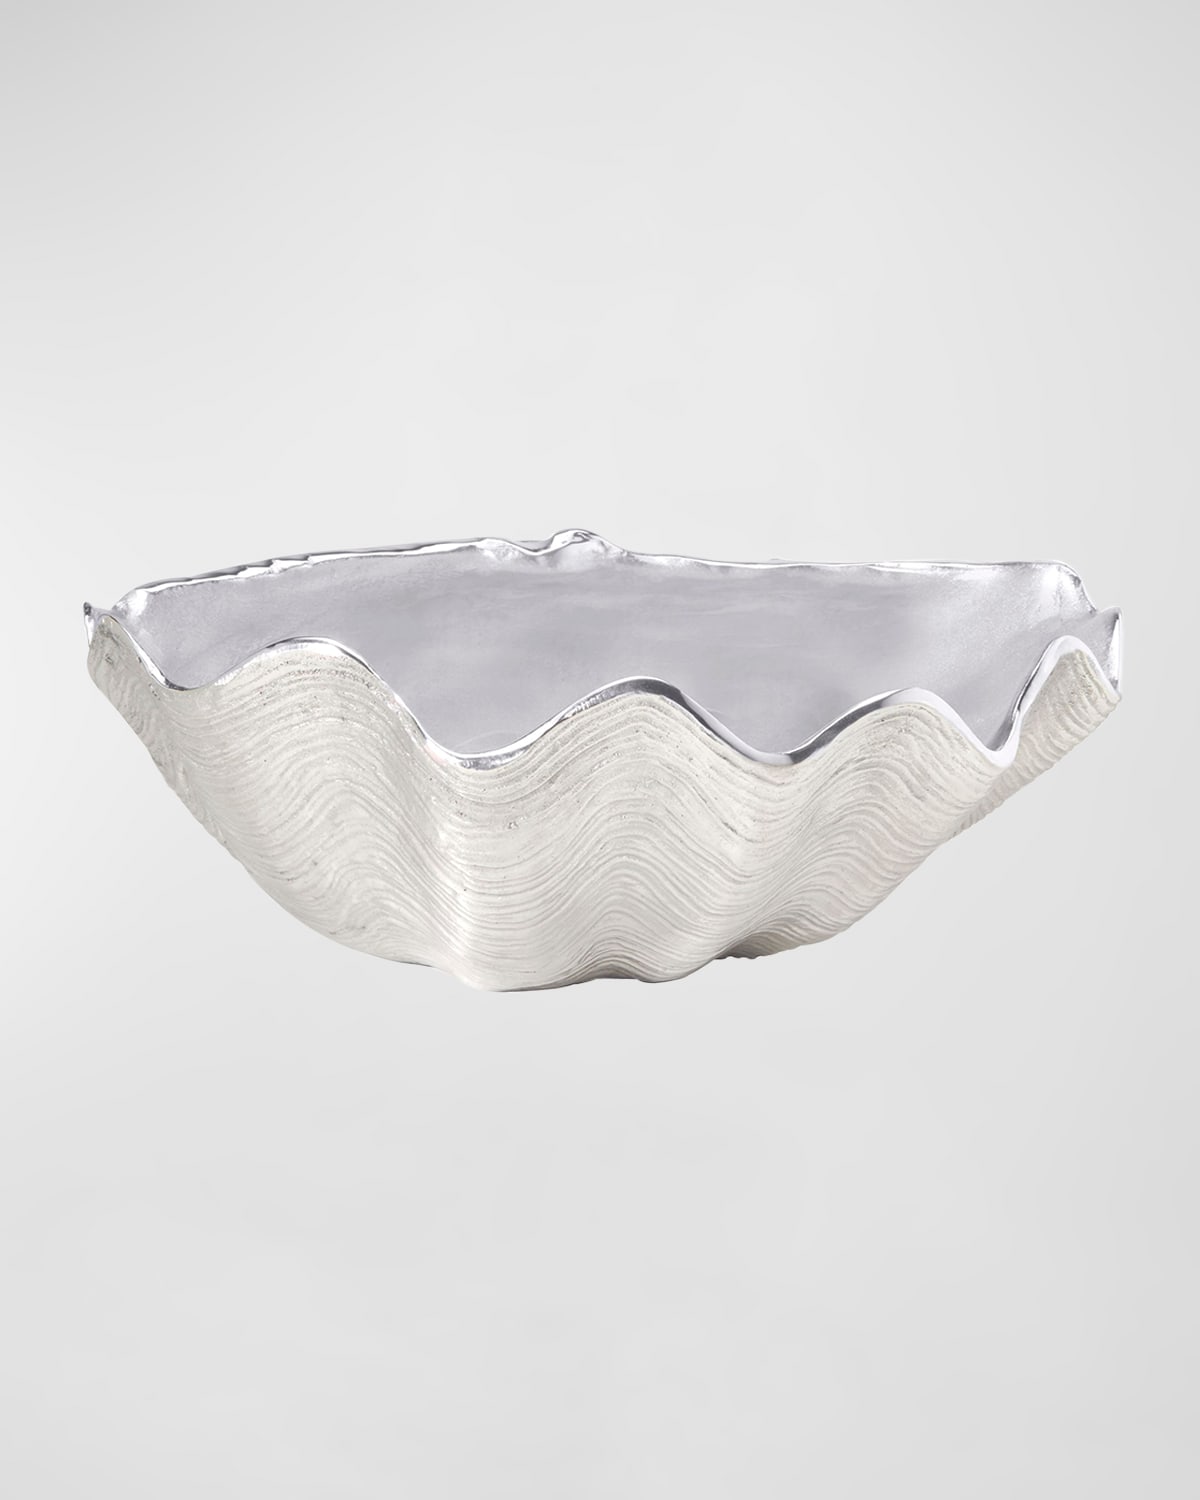 Mariposa Seaside Ruffled Edge Scallop Dish In Silver